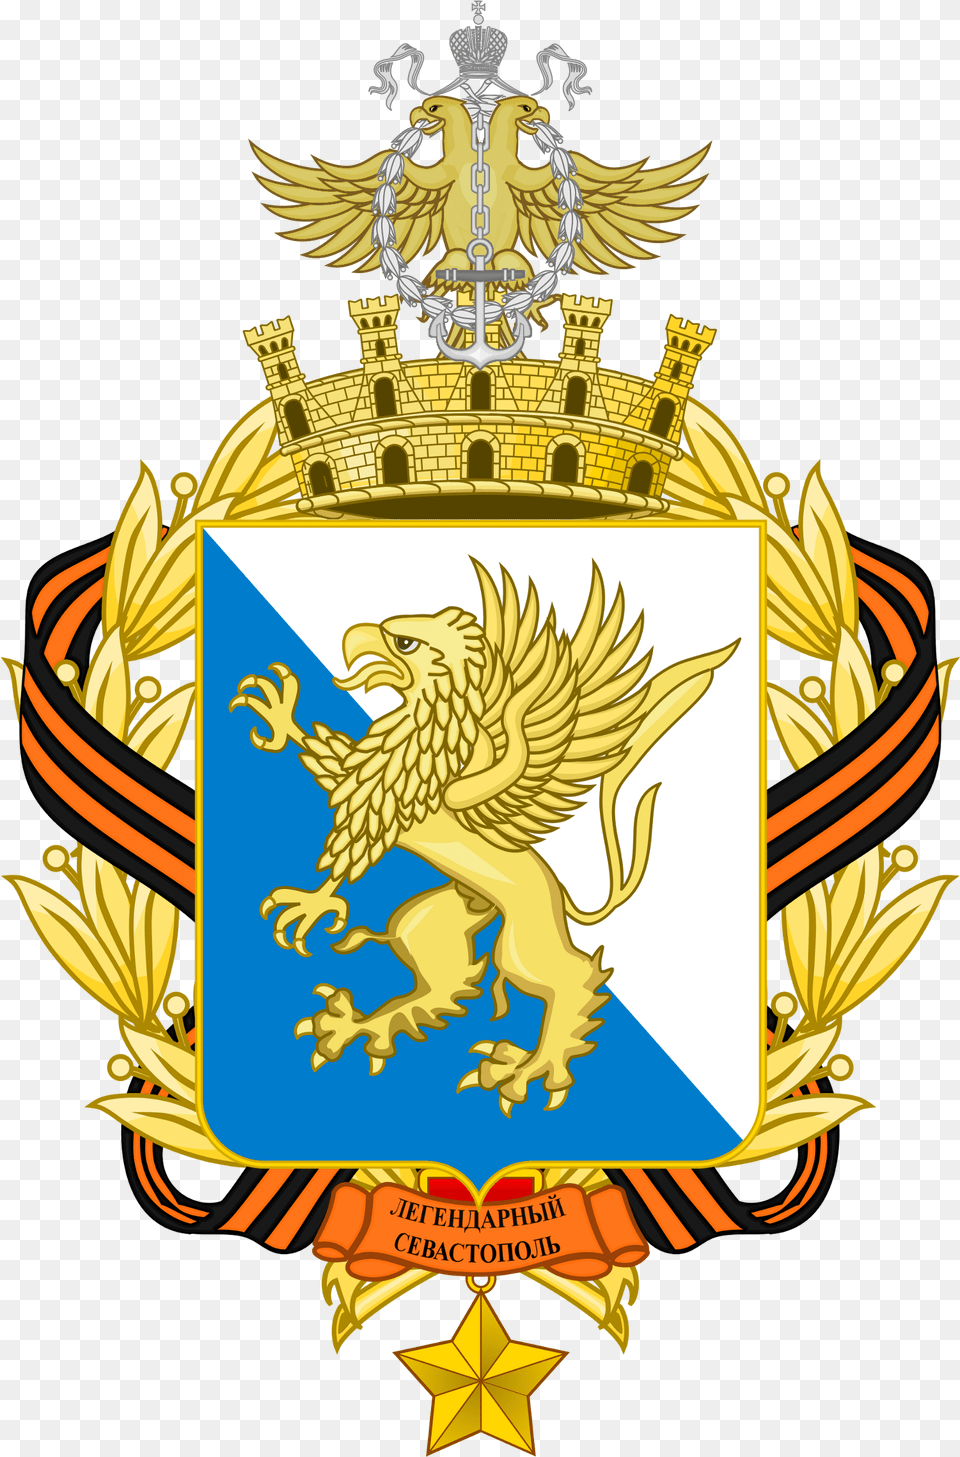 Ukraine Coat Of Arms Redesign, Emblem, Symbol, Badge, Logo Png Image